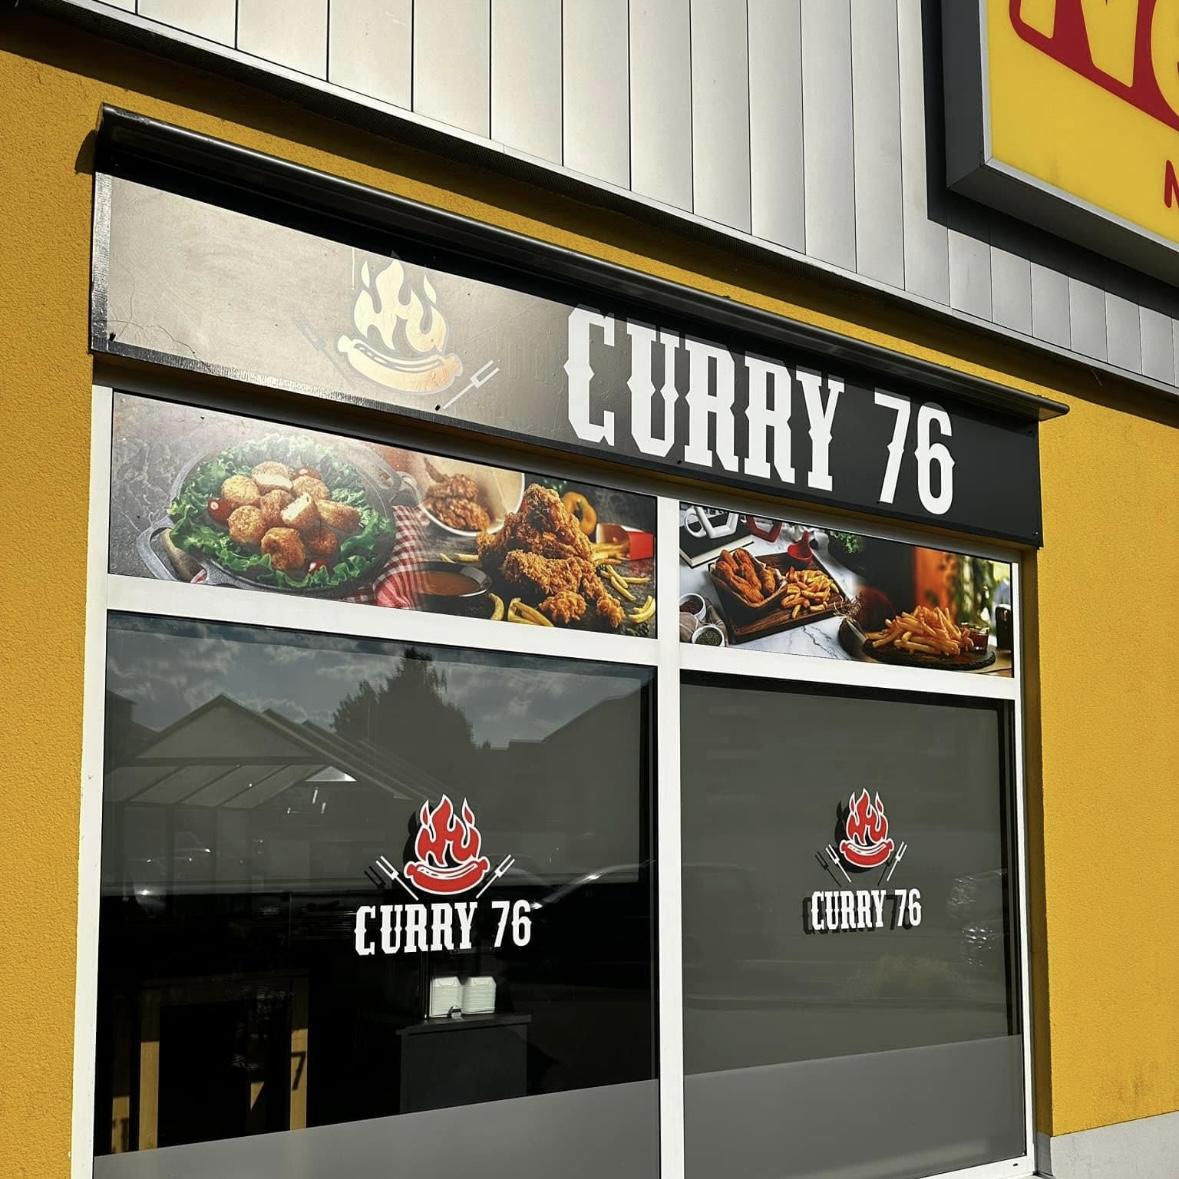 Restaurant "Curry 76" in Germersheim